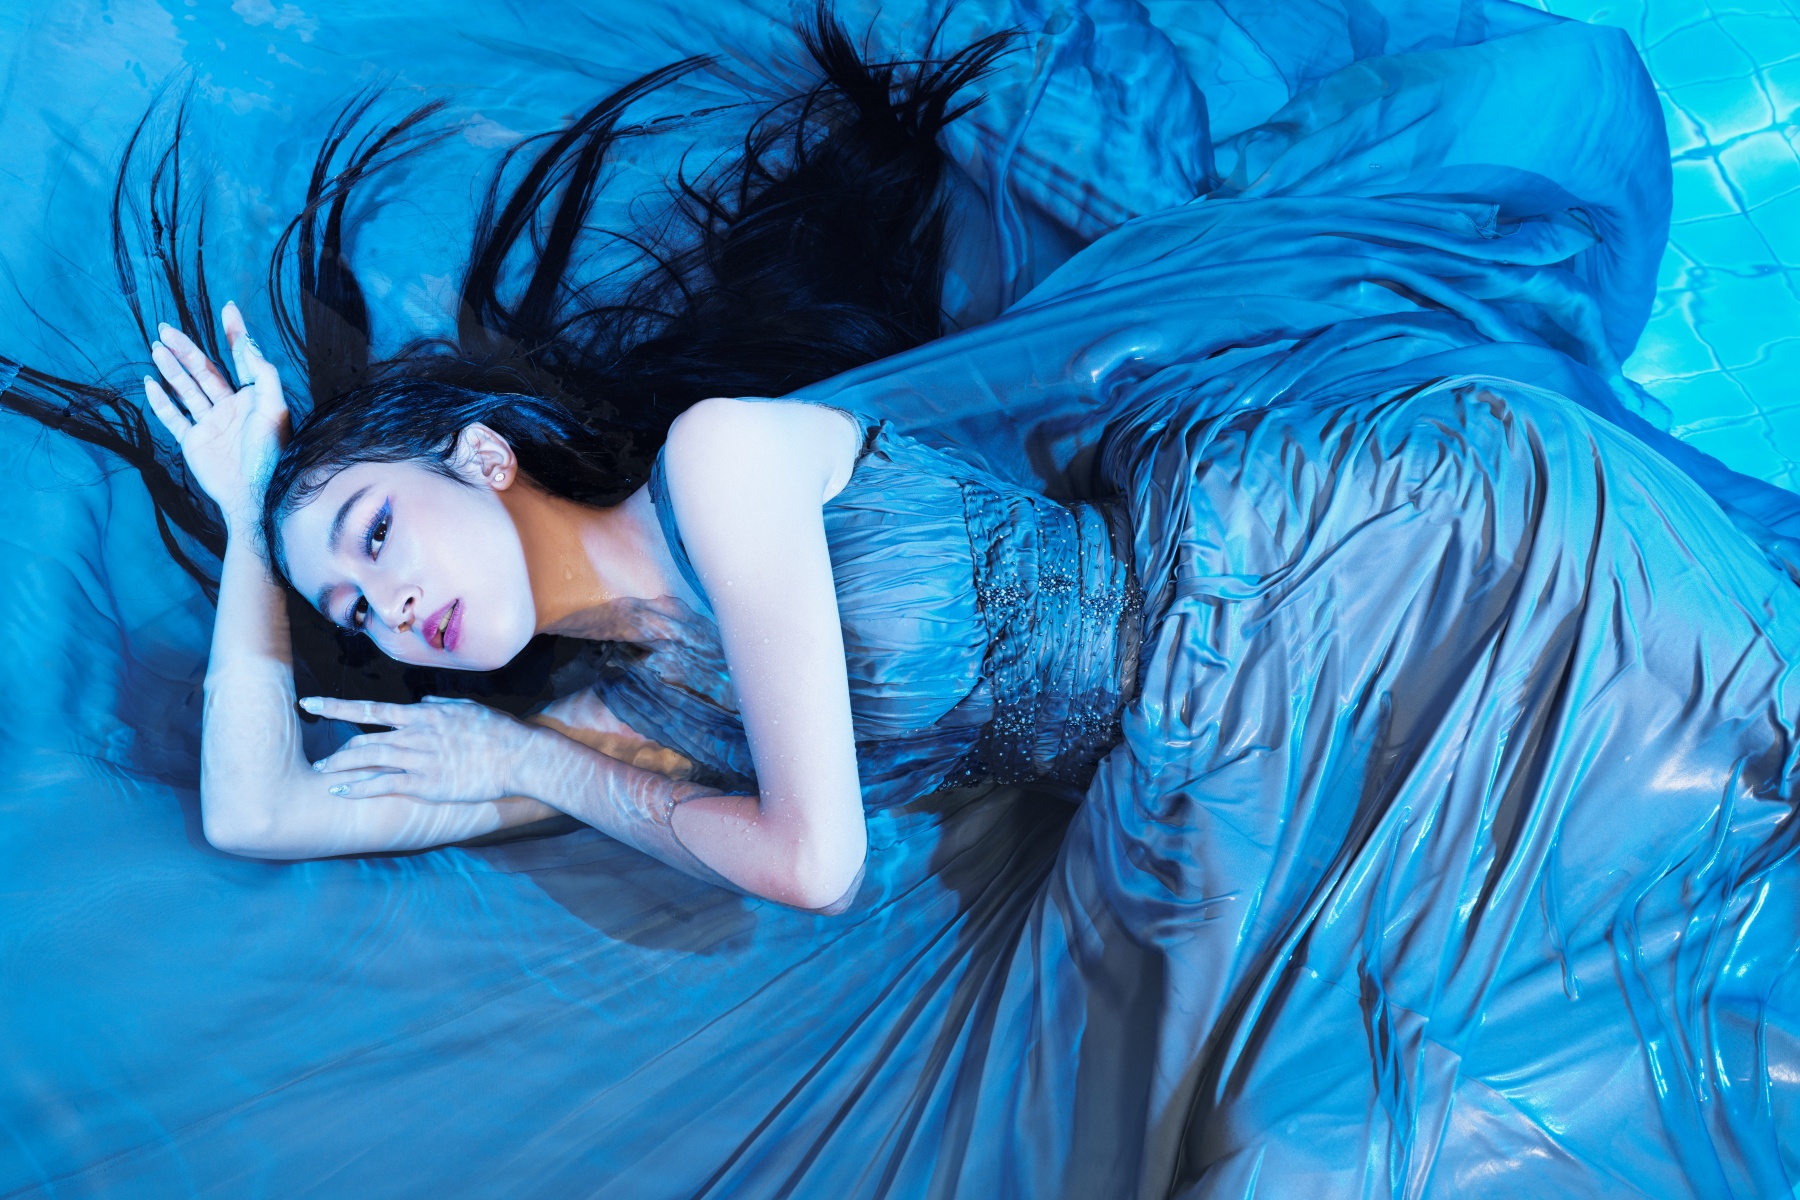 Keisya Levronka Rilis Album Perdana, Berisi 8 Lagu